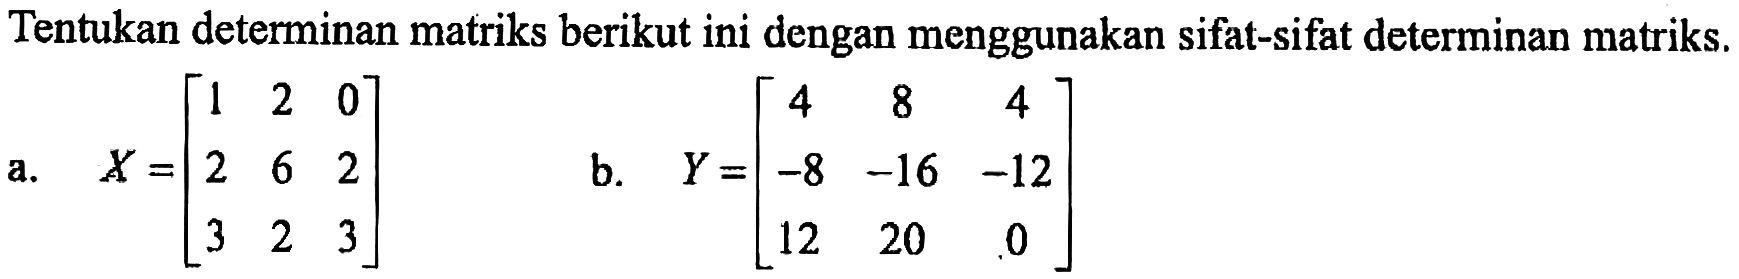 Tentukan determinan matriks berikut ini dengan menggunakan sifat-sifat determinan matriks. a. X=[1 2 0 2 6 2 3 2 3] b. Y=[4 8 4 -8 -16 -12 12 20 0]